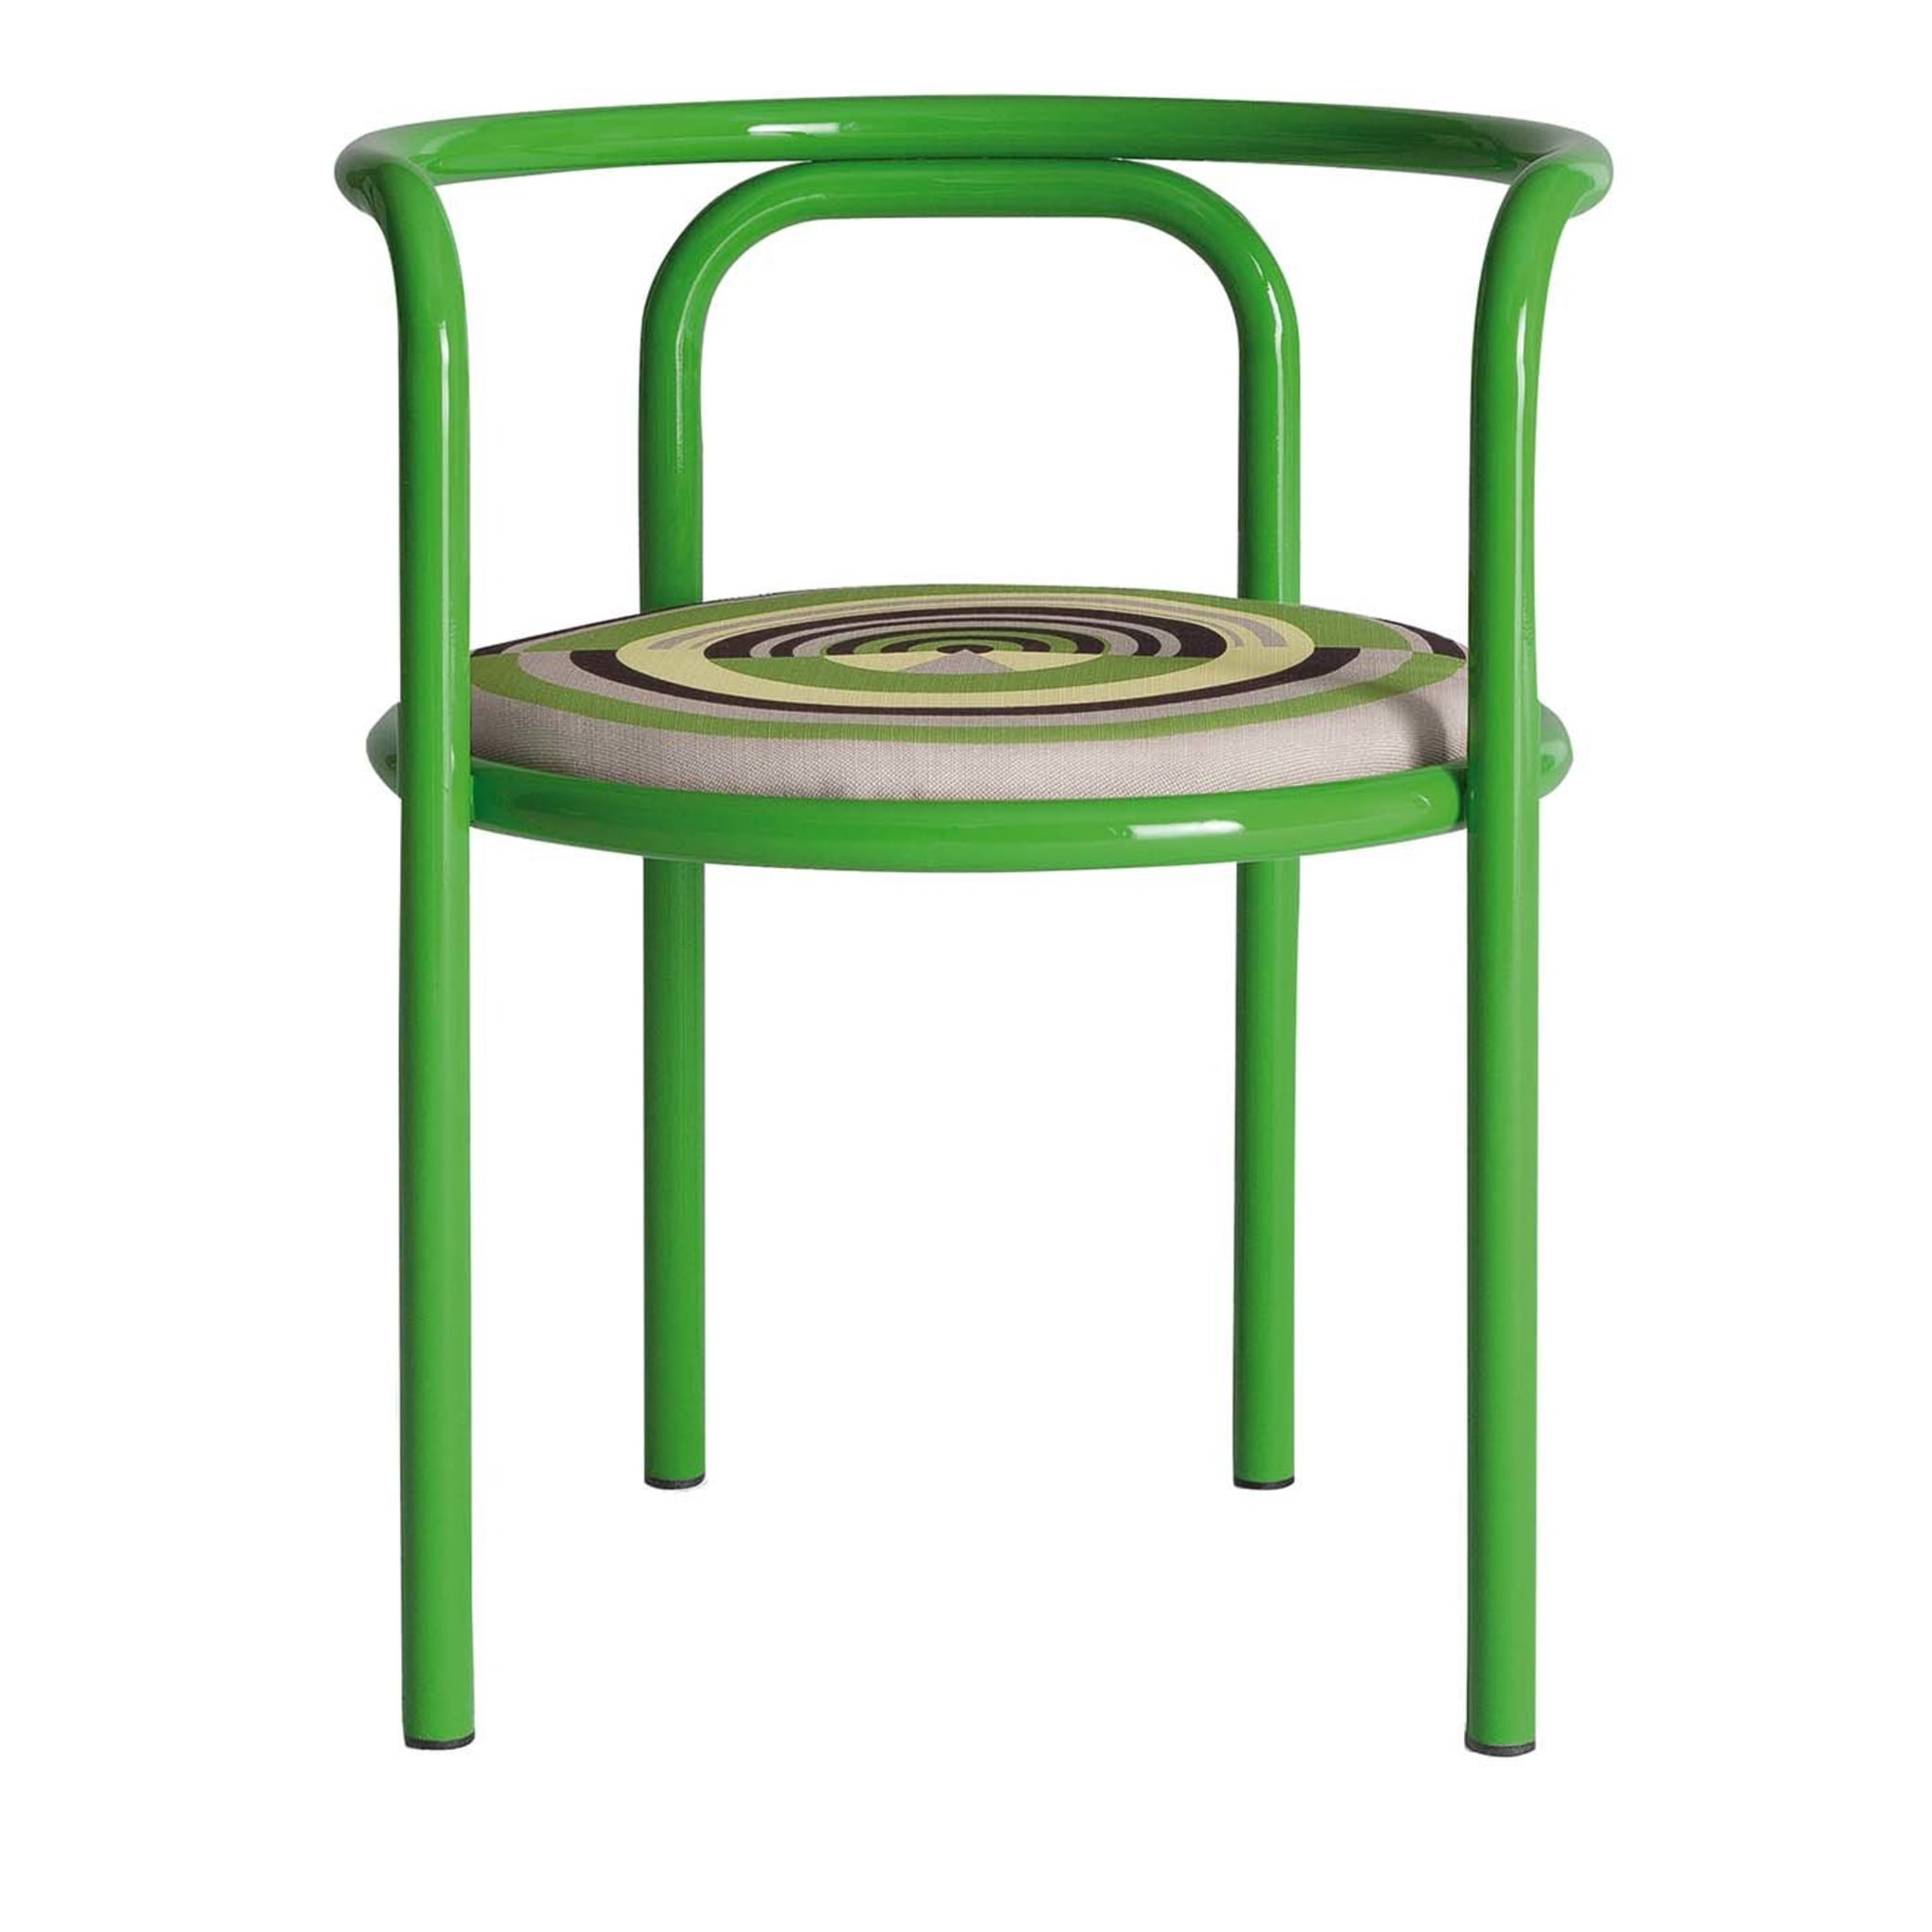 Locus Solus Green Chair by Gae Aulenti - Main view